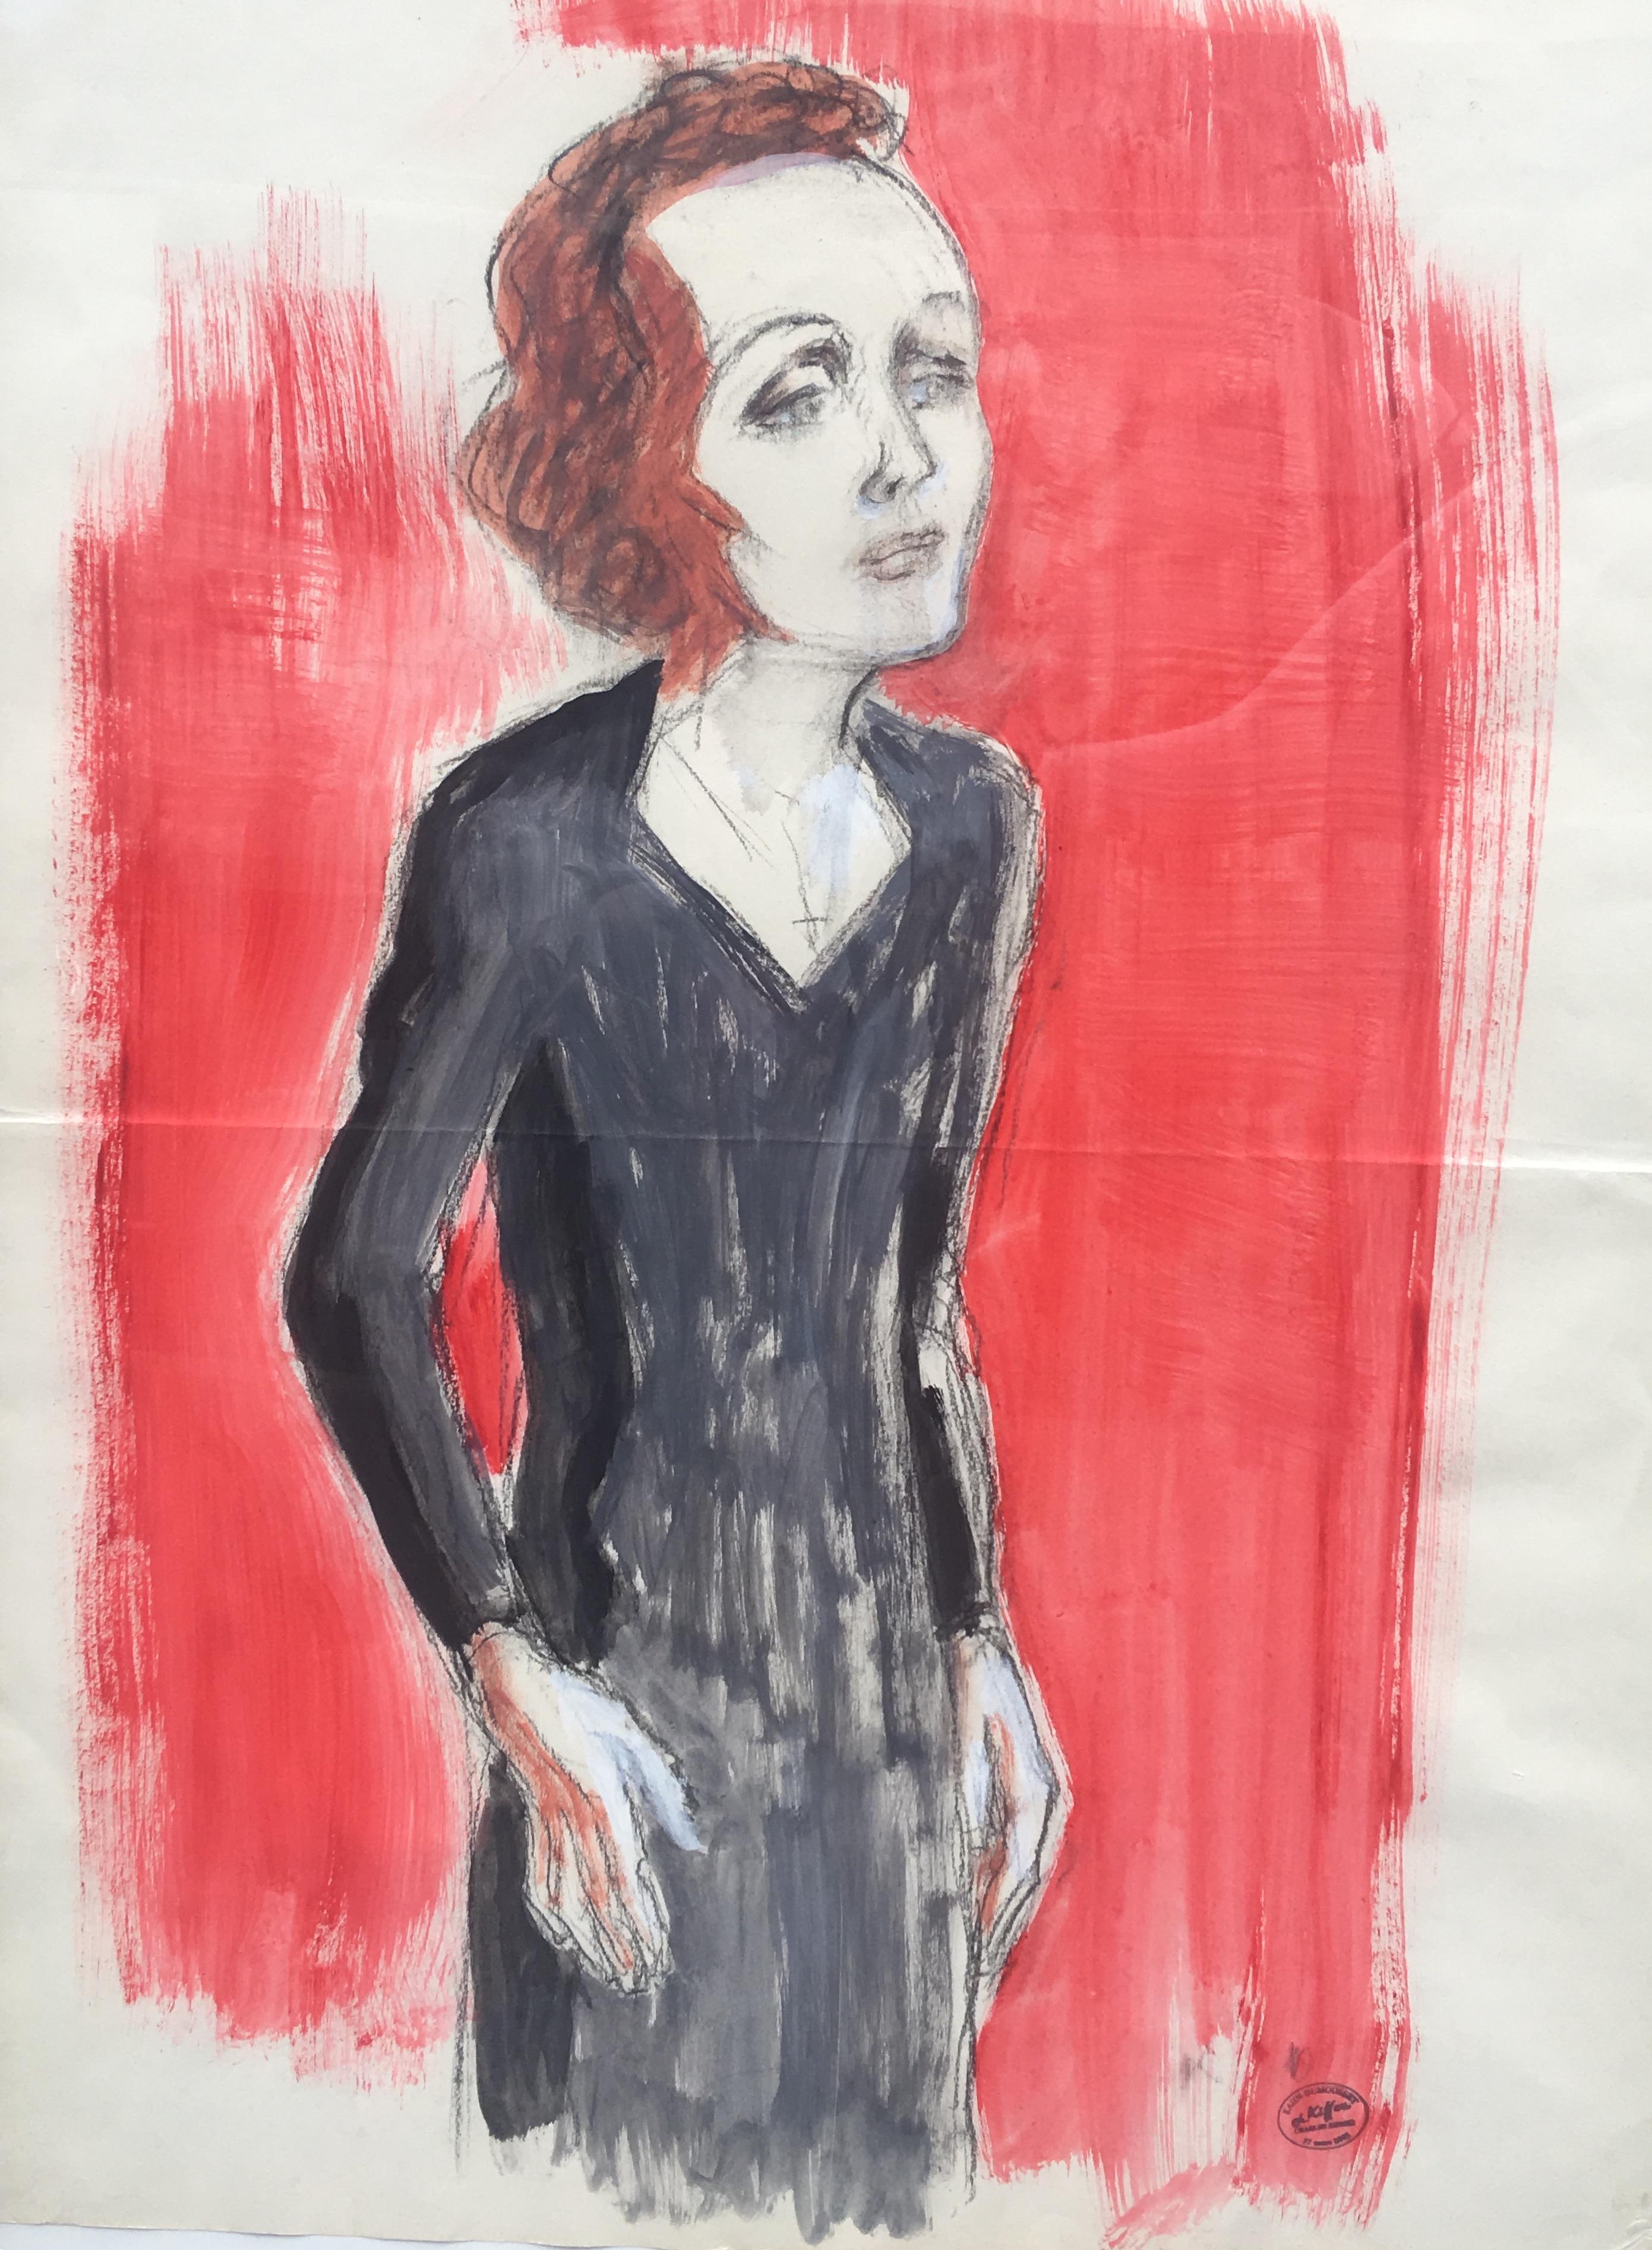 Edith Piaf auf der Bühne, Aquarell und Bleistift auf Papier, mit K für Charles Kiffer (1902-1992) mongrammatisiert, Werkstattstempel.

Charles Kiffer ist bekannt für seine Figuren, Gemälde, Drucke und Plakate, die fast alle dem Theater, Varieté und